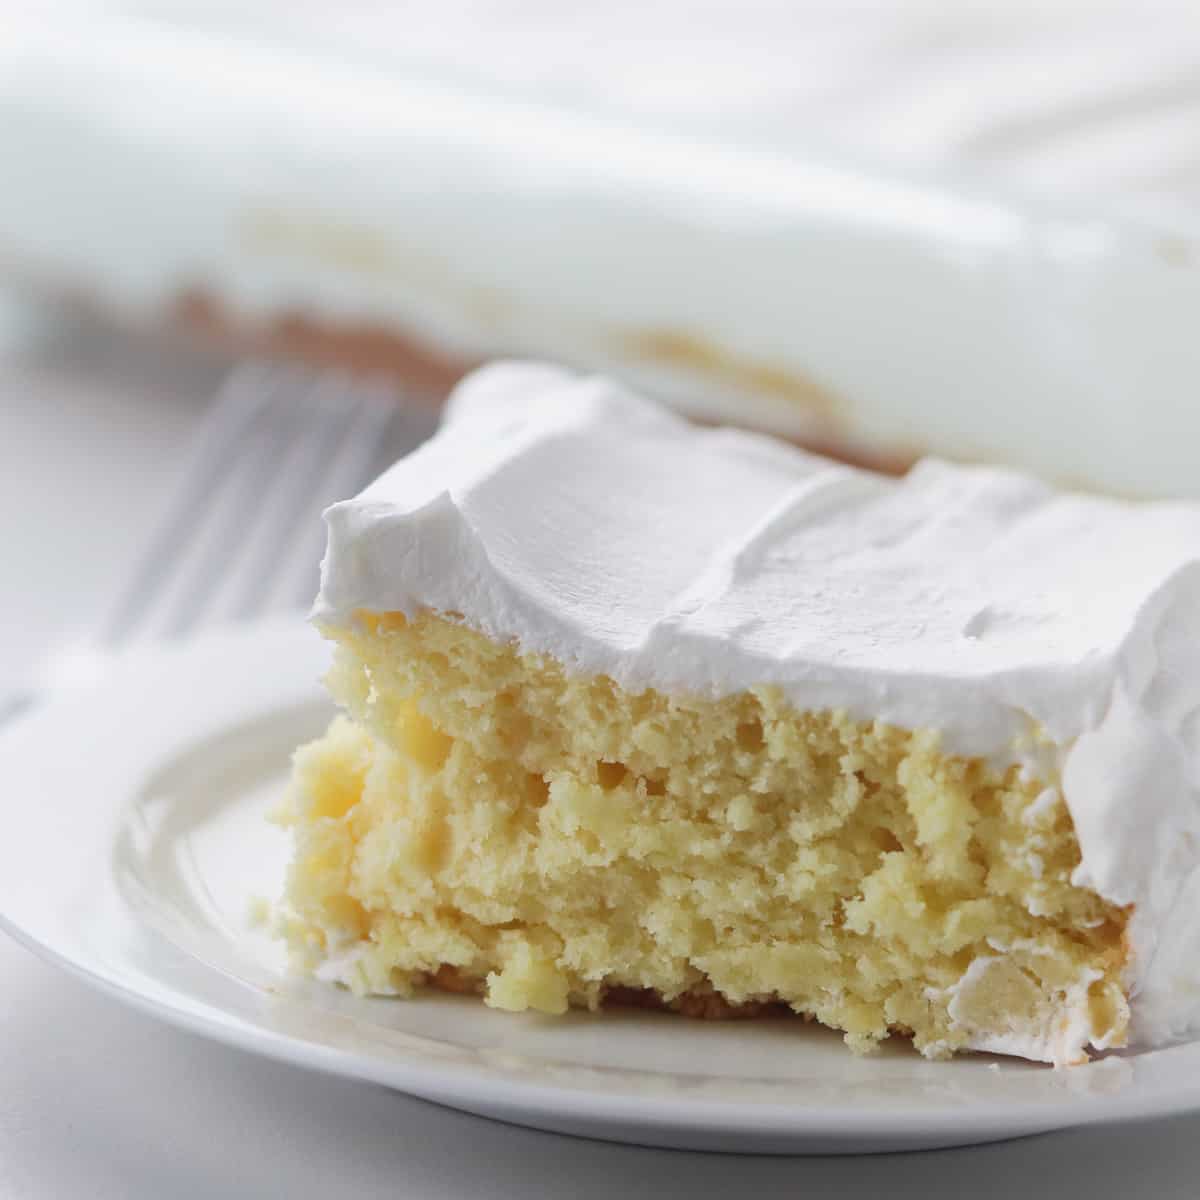 Best Lemon Cake Recipe - How to Make Lemon Cake